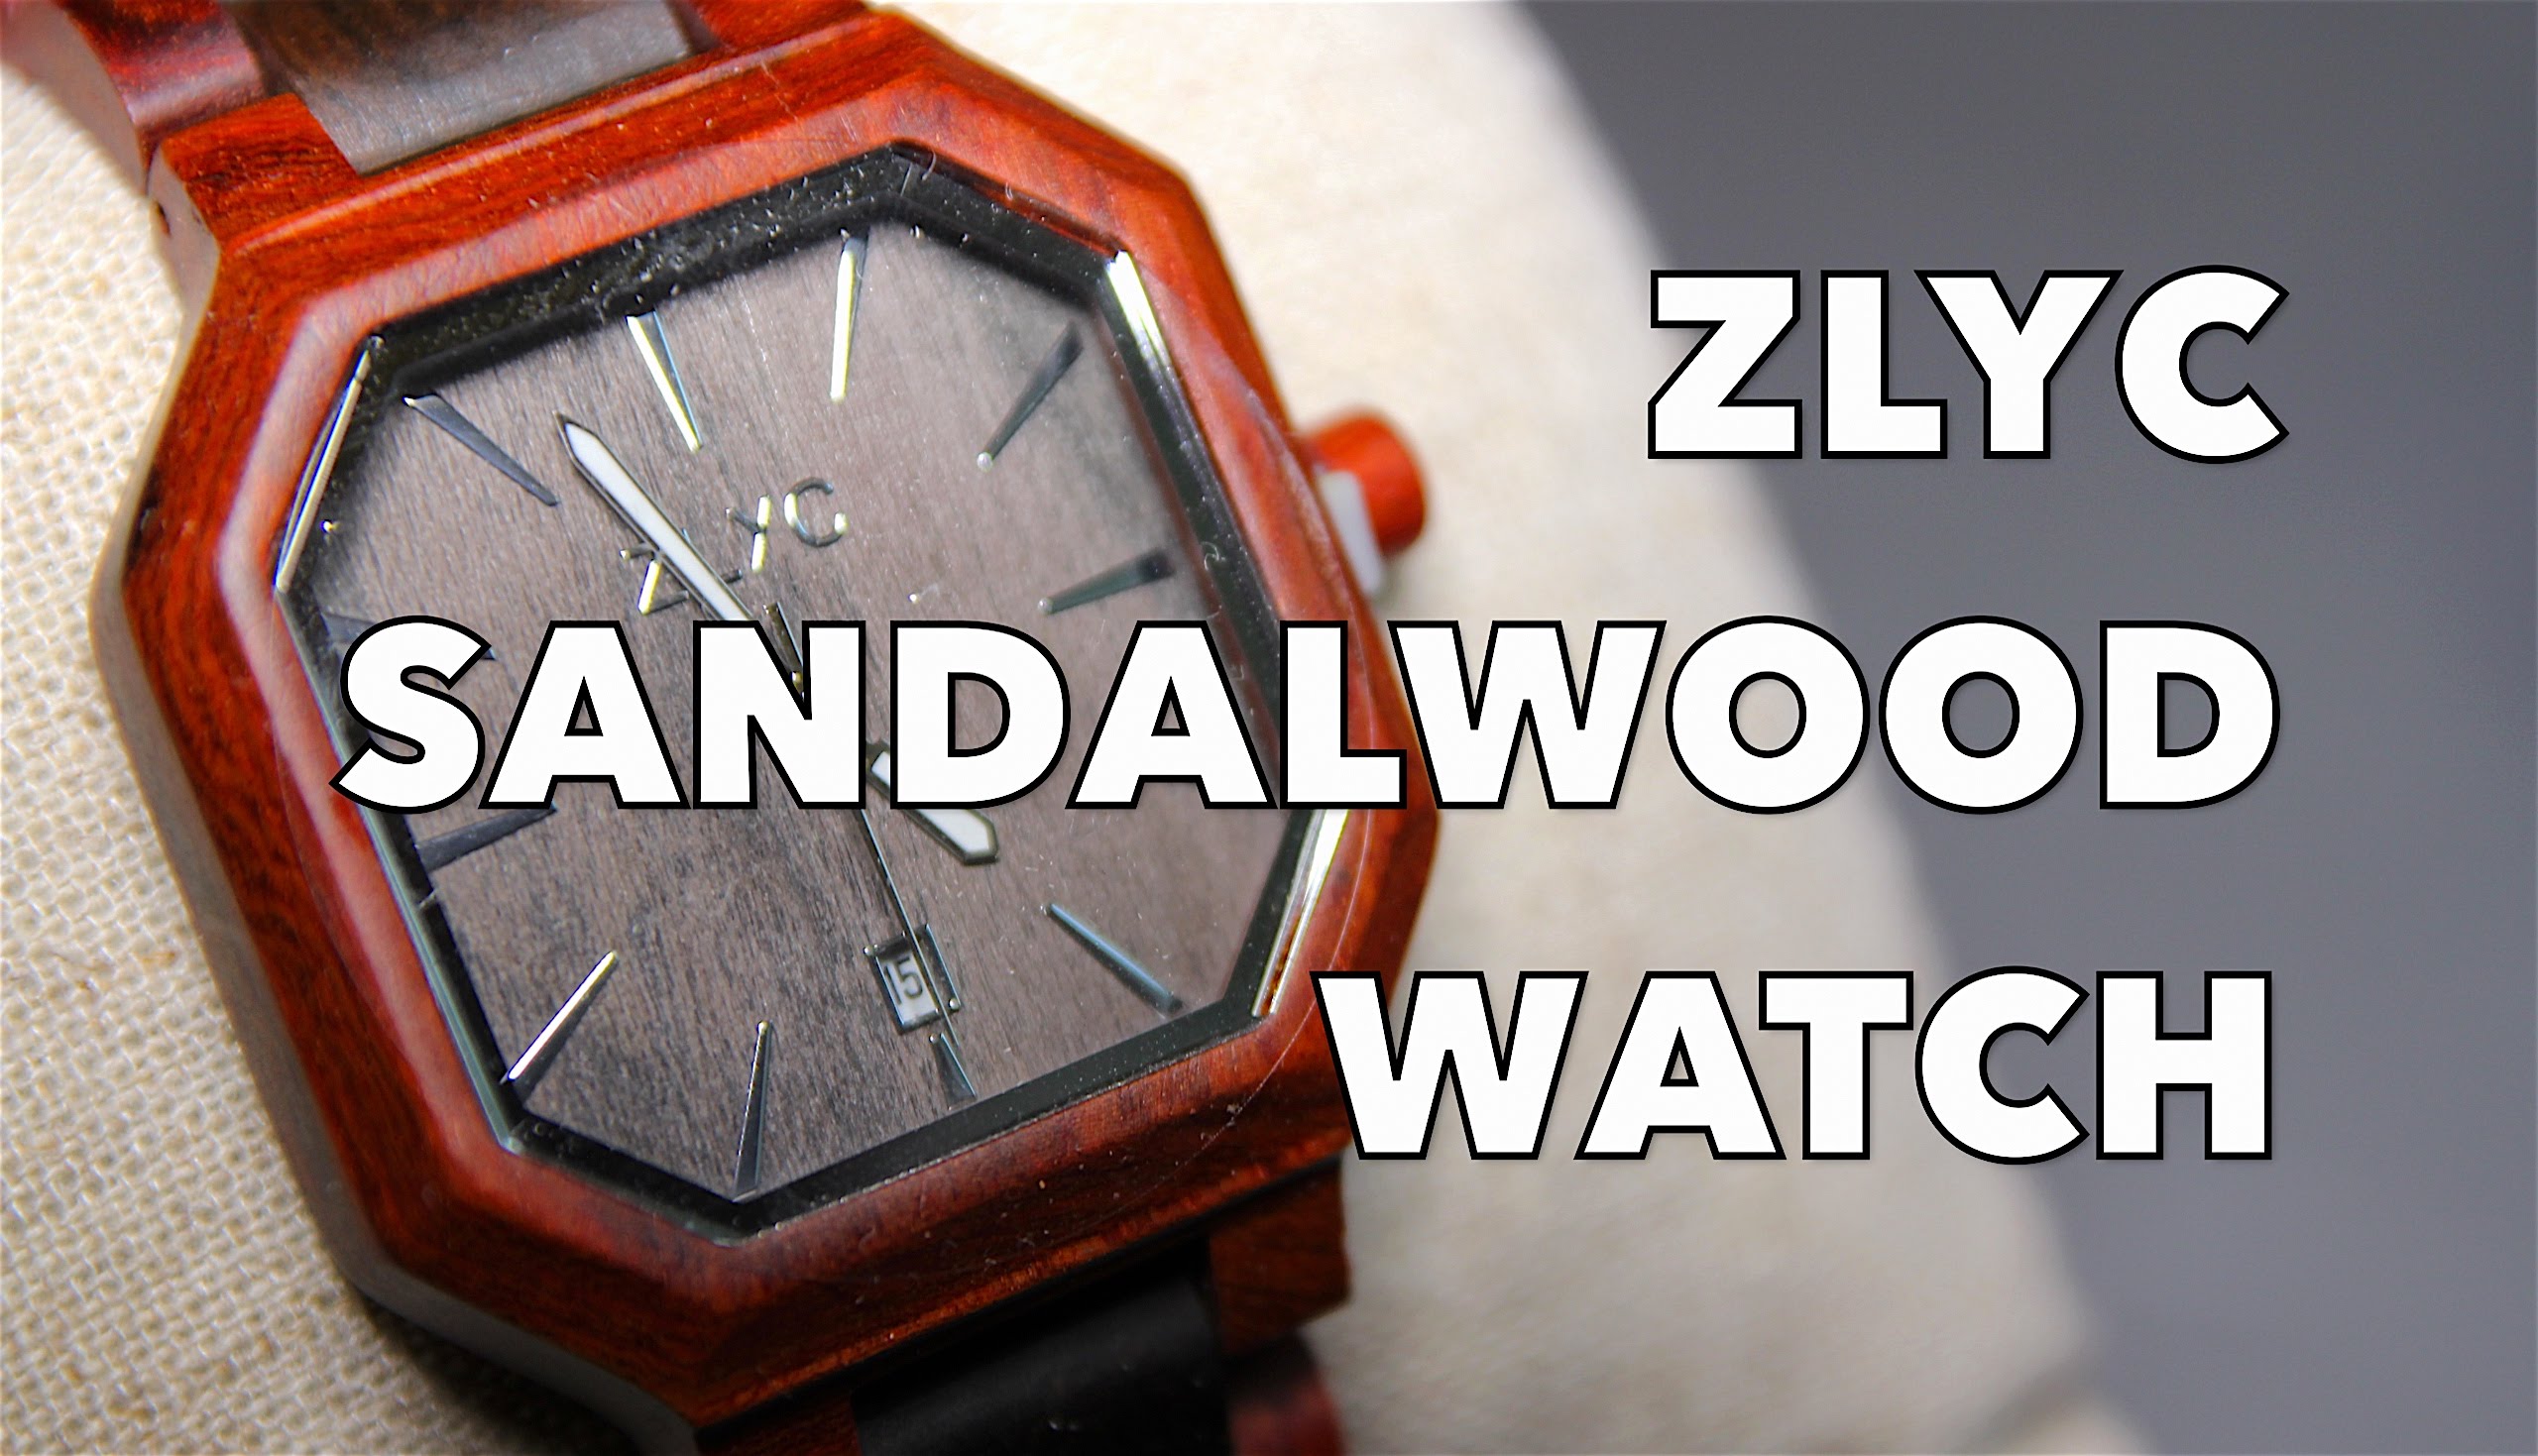 ZLYC Sandalwood Wristwatch Review